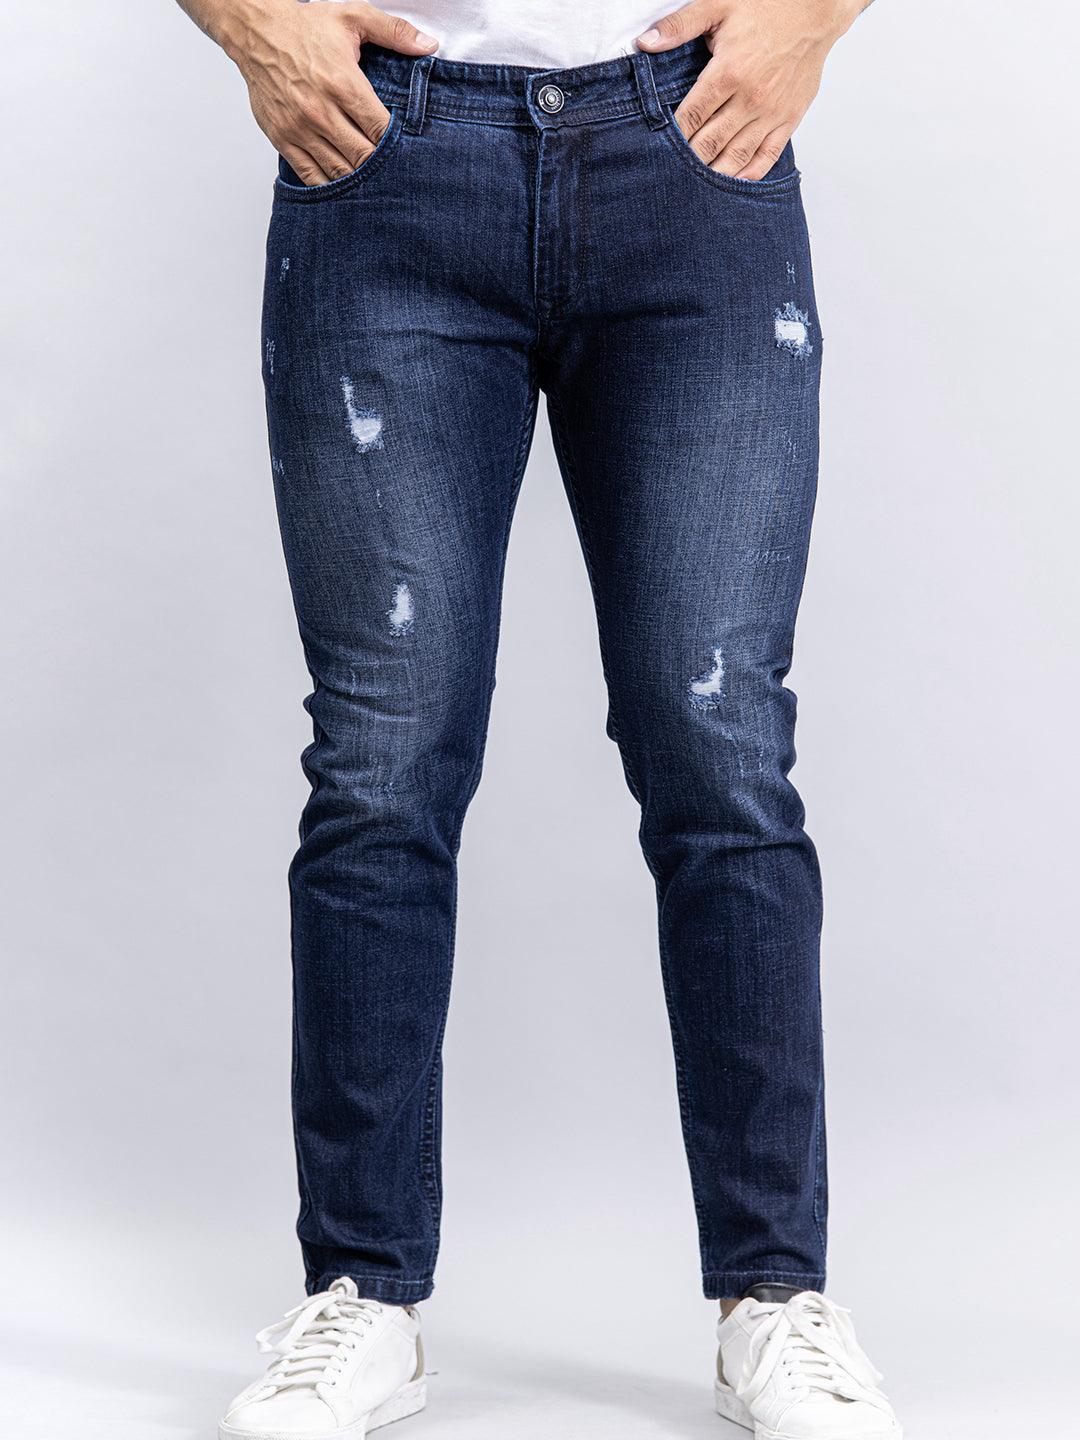 BAPE x A.P.C B Damage Jeans Stonewashed Indigo Denim - FW22 - US